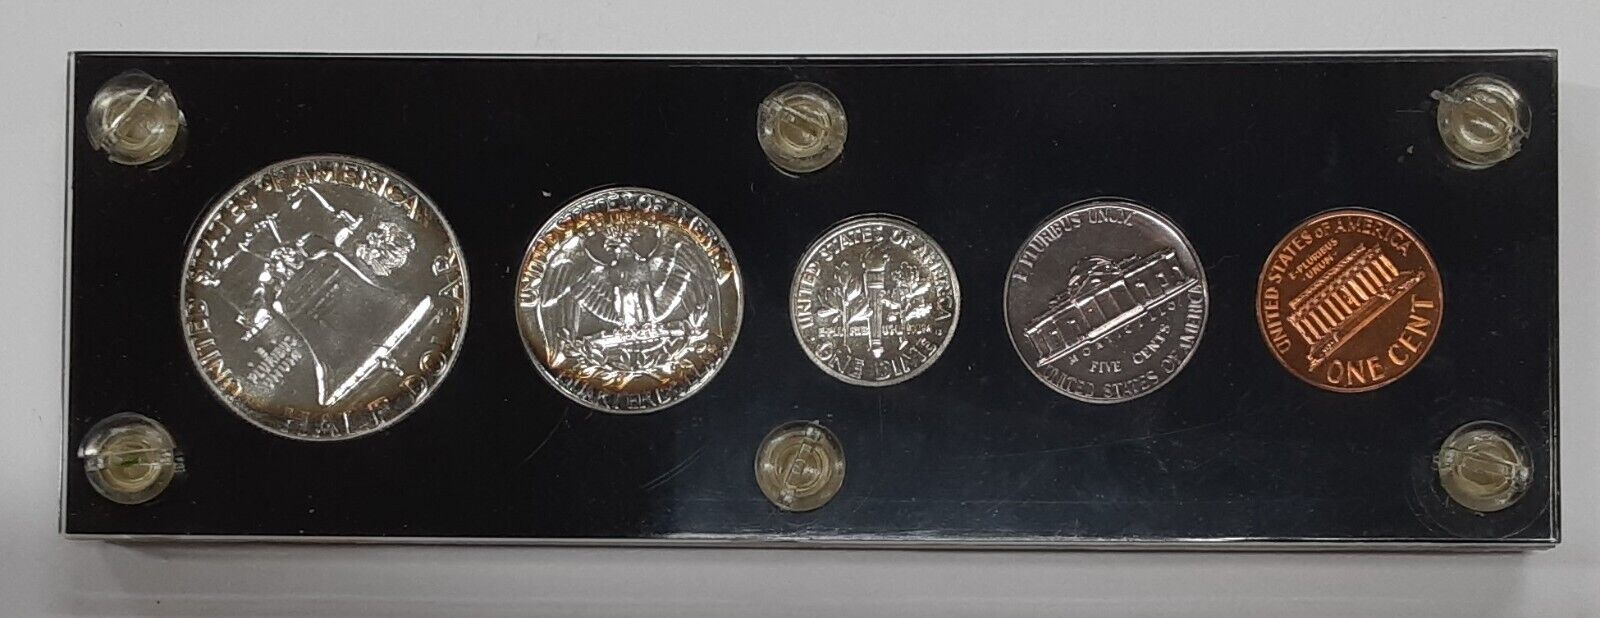 1961 Proof Set 5 Coins w/90% Silver Half, Quarter, & Dime in Black Holder